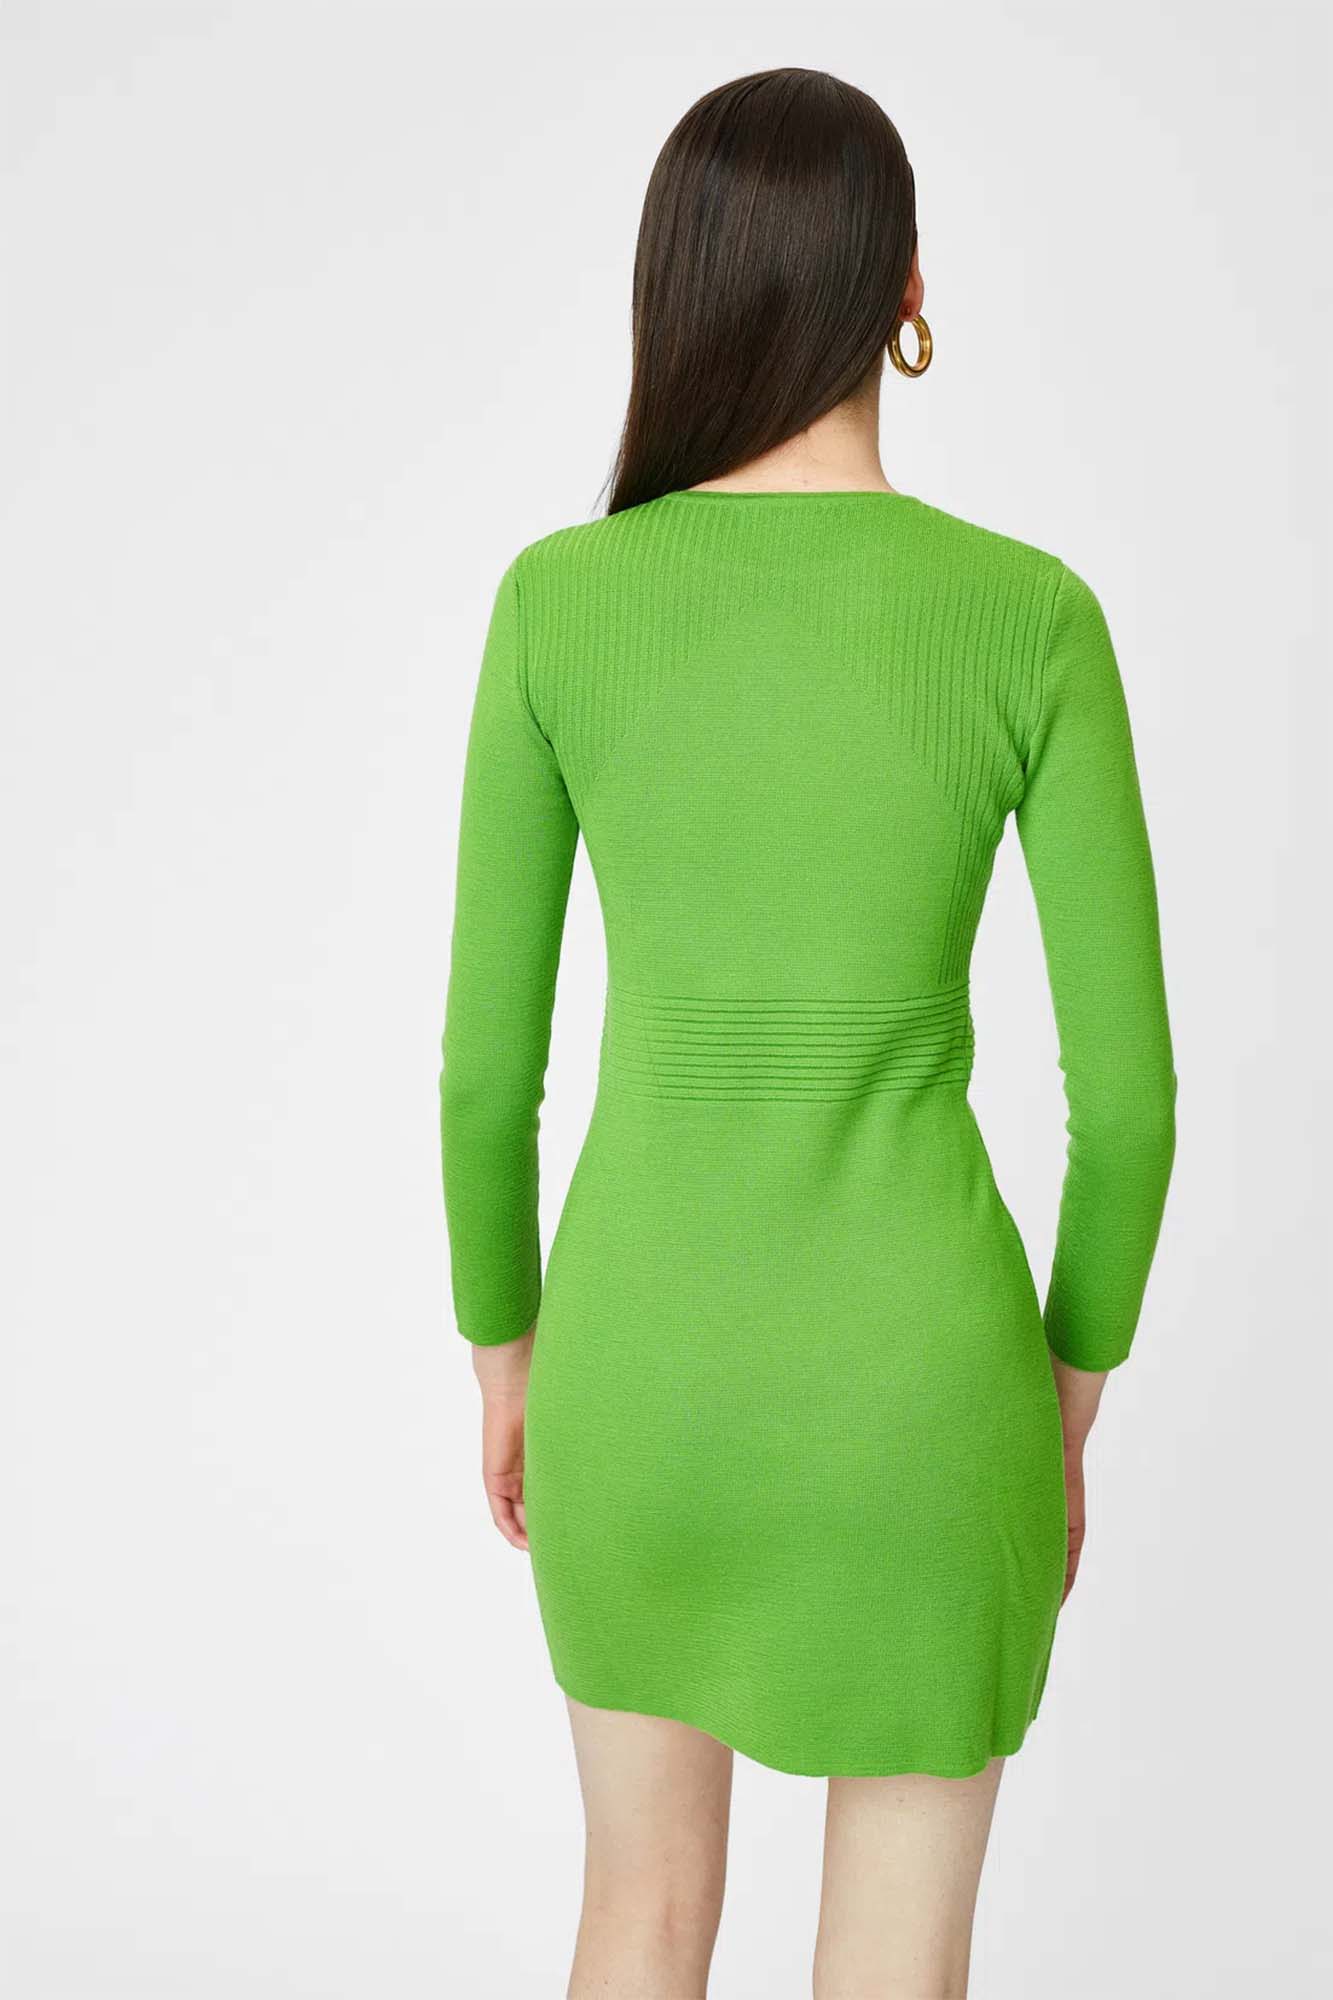 Short green woolen dress